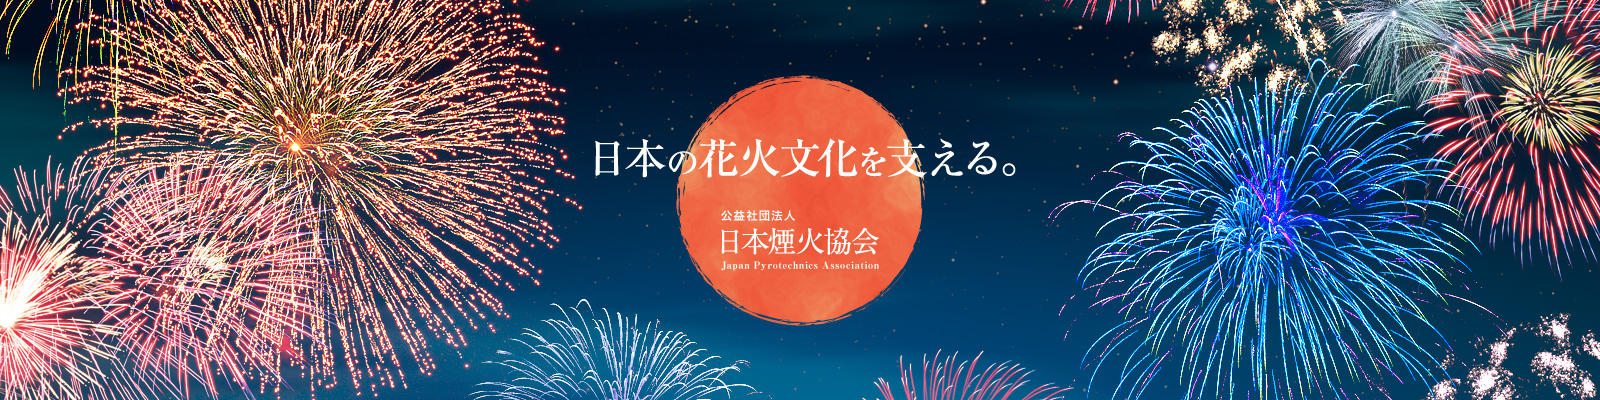 日本の花火文化を支える。 公益社団法人 日本煙火協会